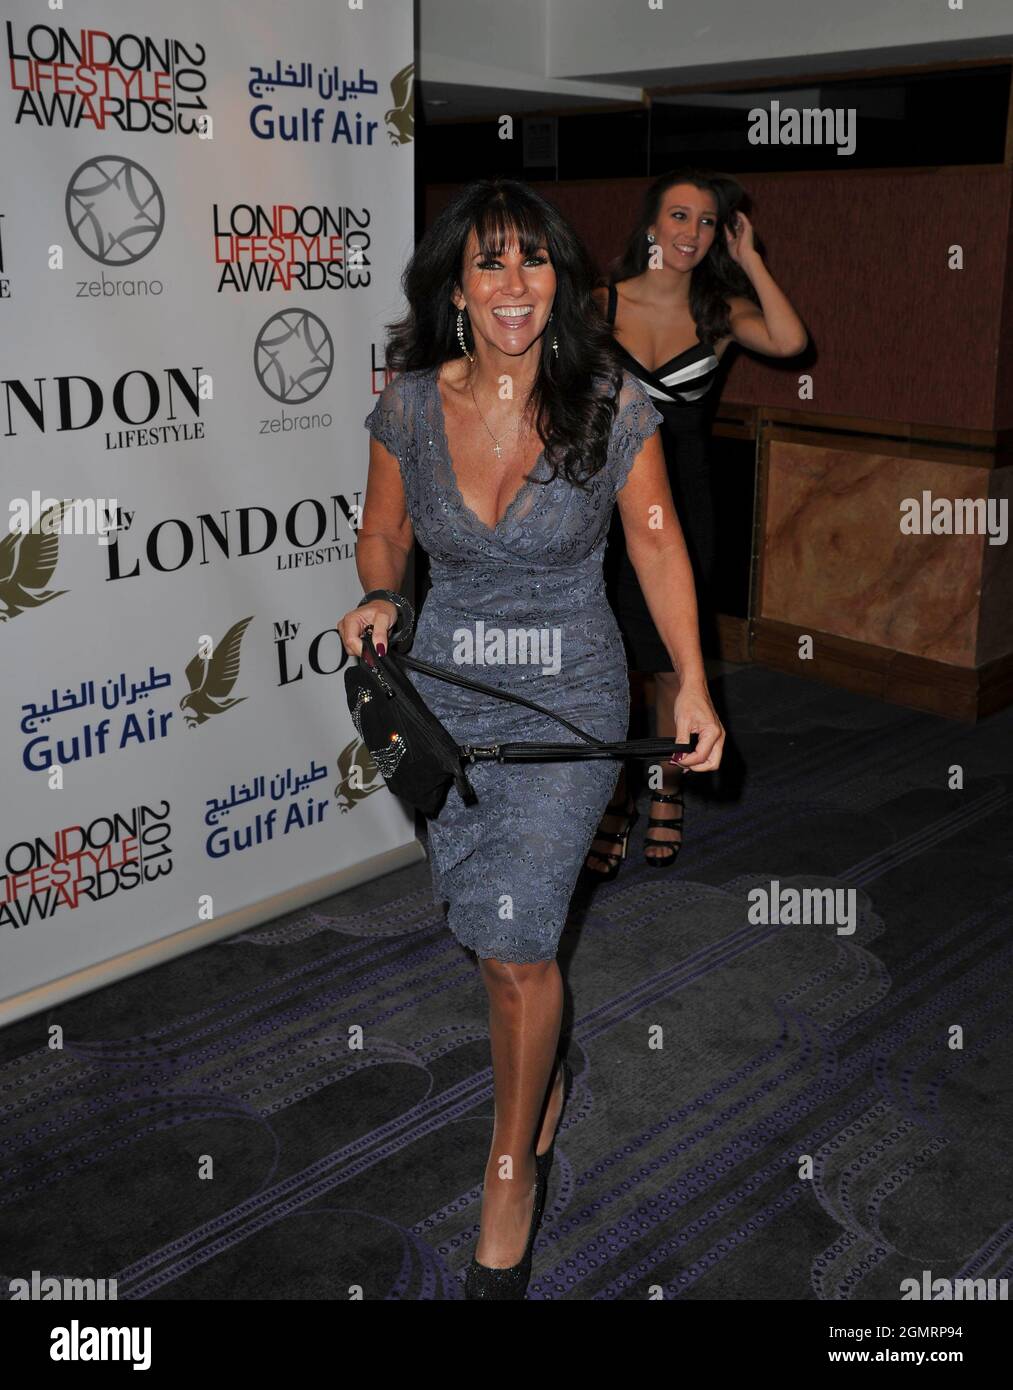 Londres, Reino Unido. 231013. Linda Lusardi en los premios London Lifestyle Awards celebrados en The Troxy en el este de Londres. 23 de octubre de 2013. Ref: LMK386-45562-231013 Gary Mitchell/Landmark Media WWW.LMKMEDIA.COM Foto de stock